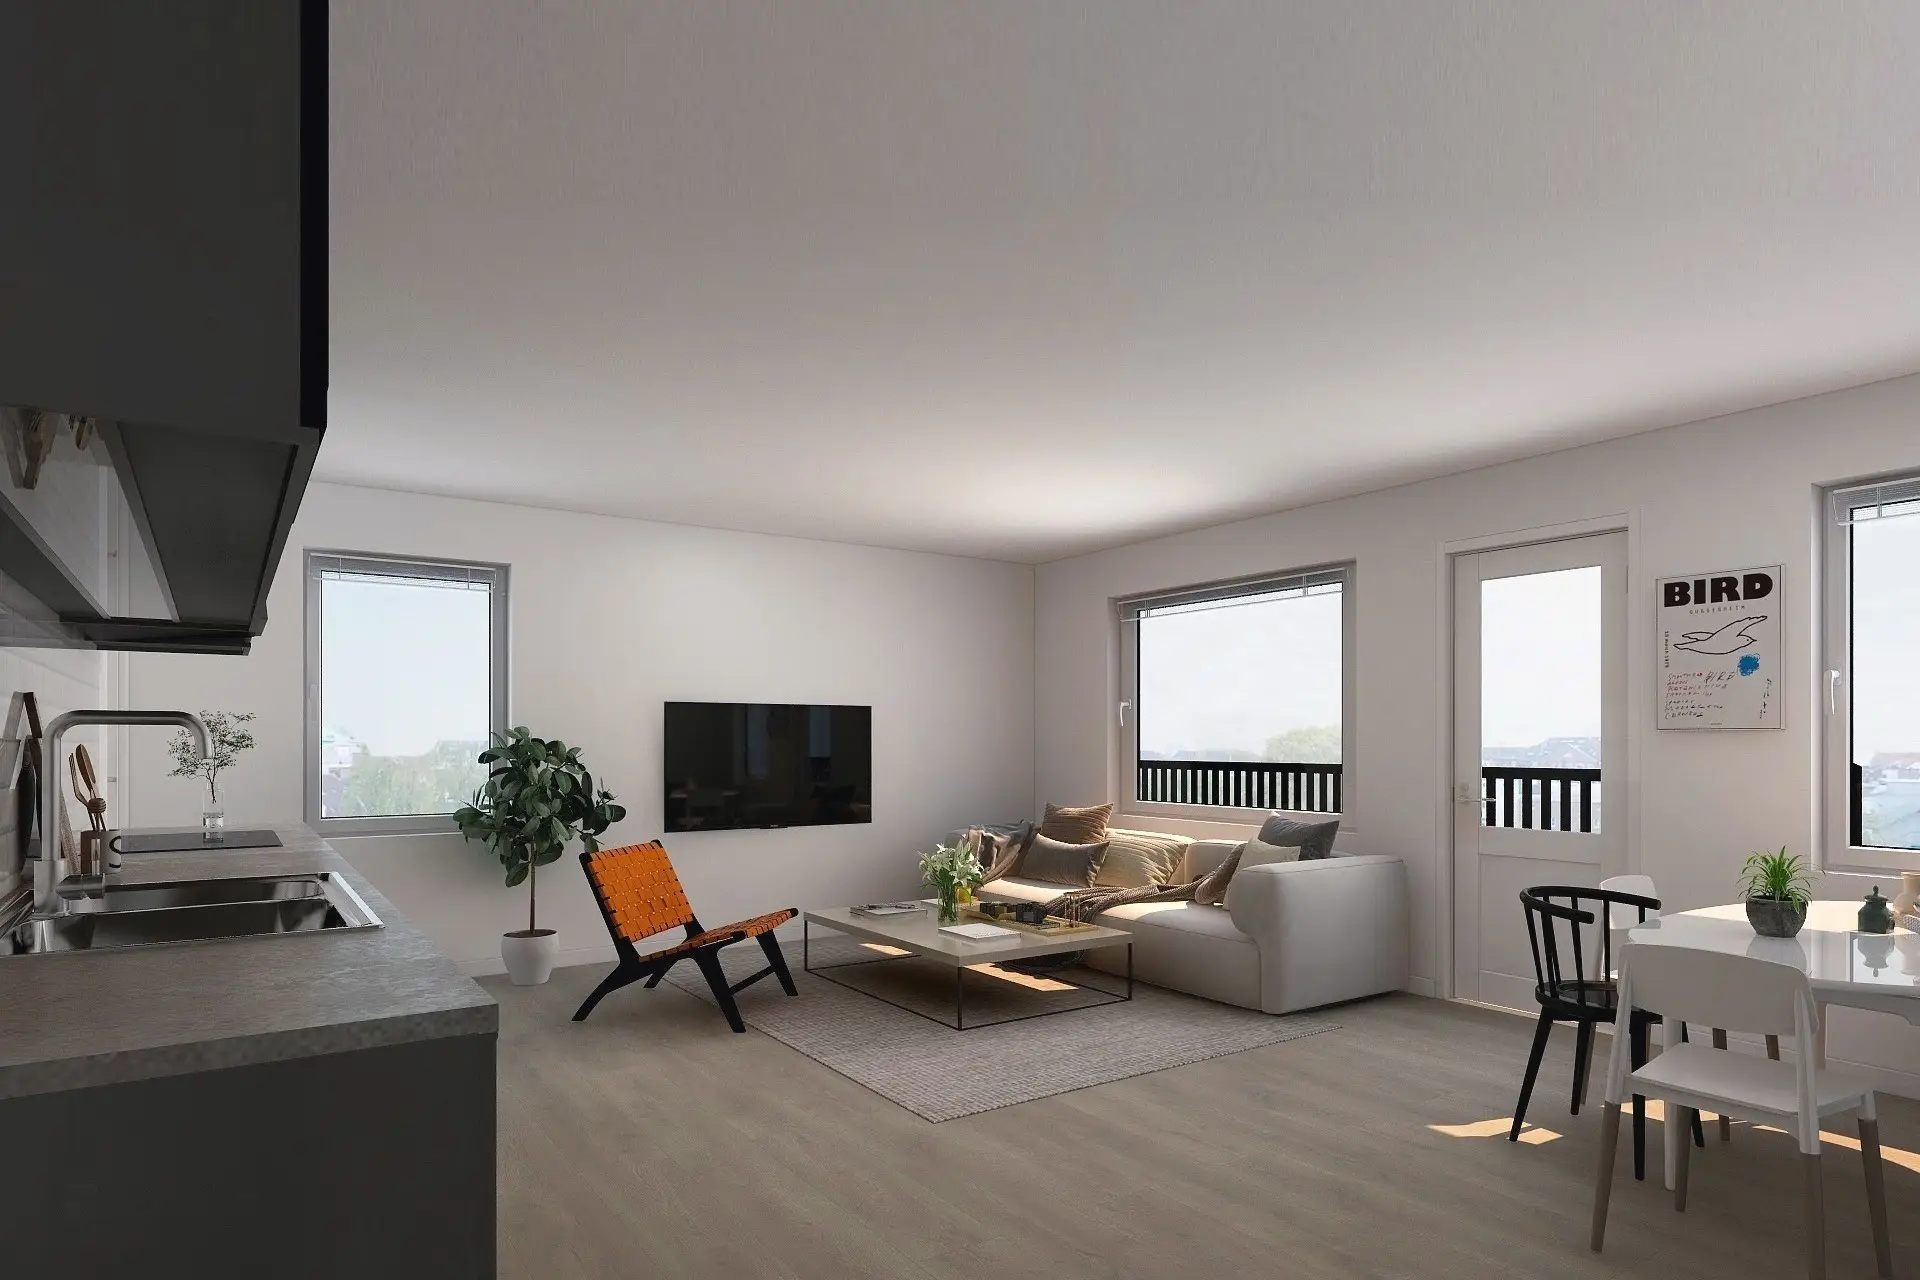 3D-visualisering av lägenhetsinredning med ett öppet kök, en vardagsrumsdel med soffa och tv, ett matbord och rikligt med dagsljus från stora fönster.